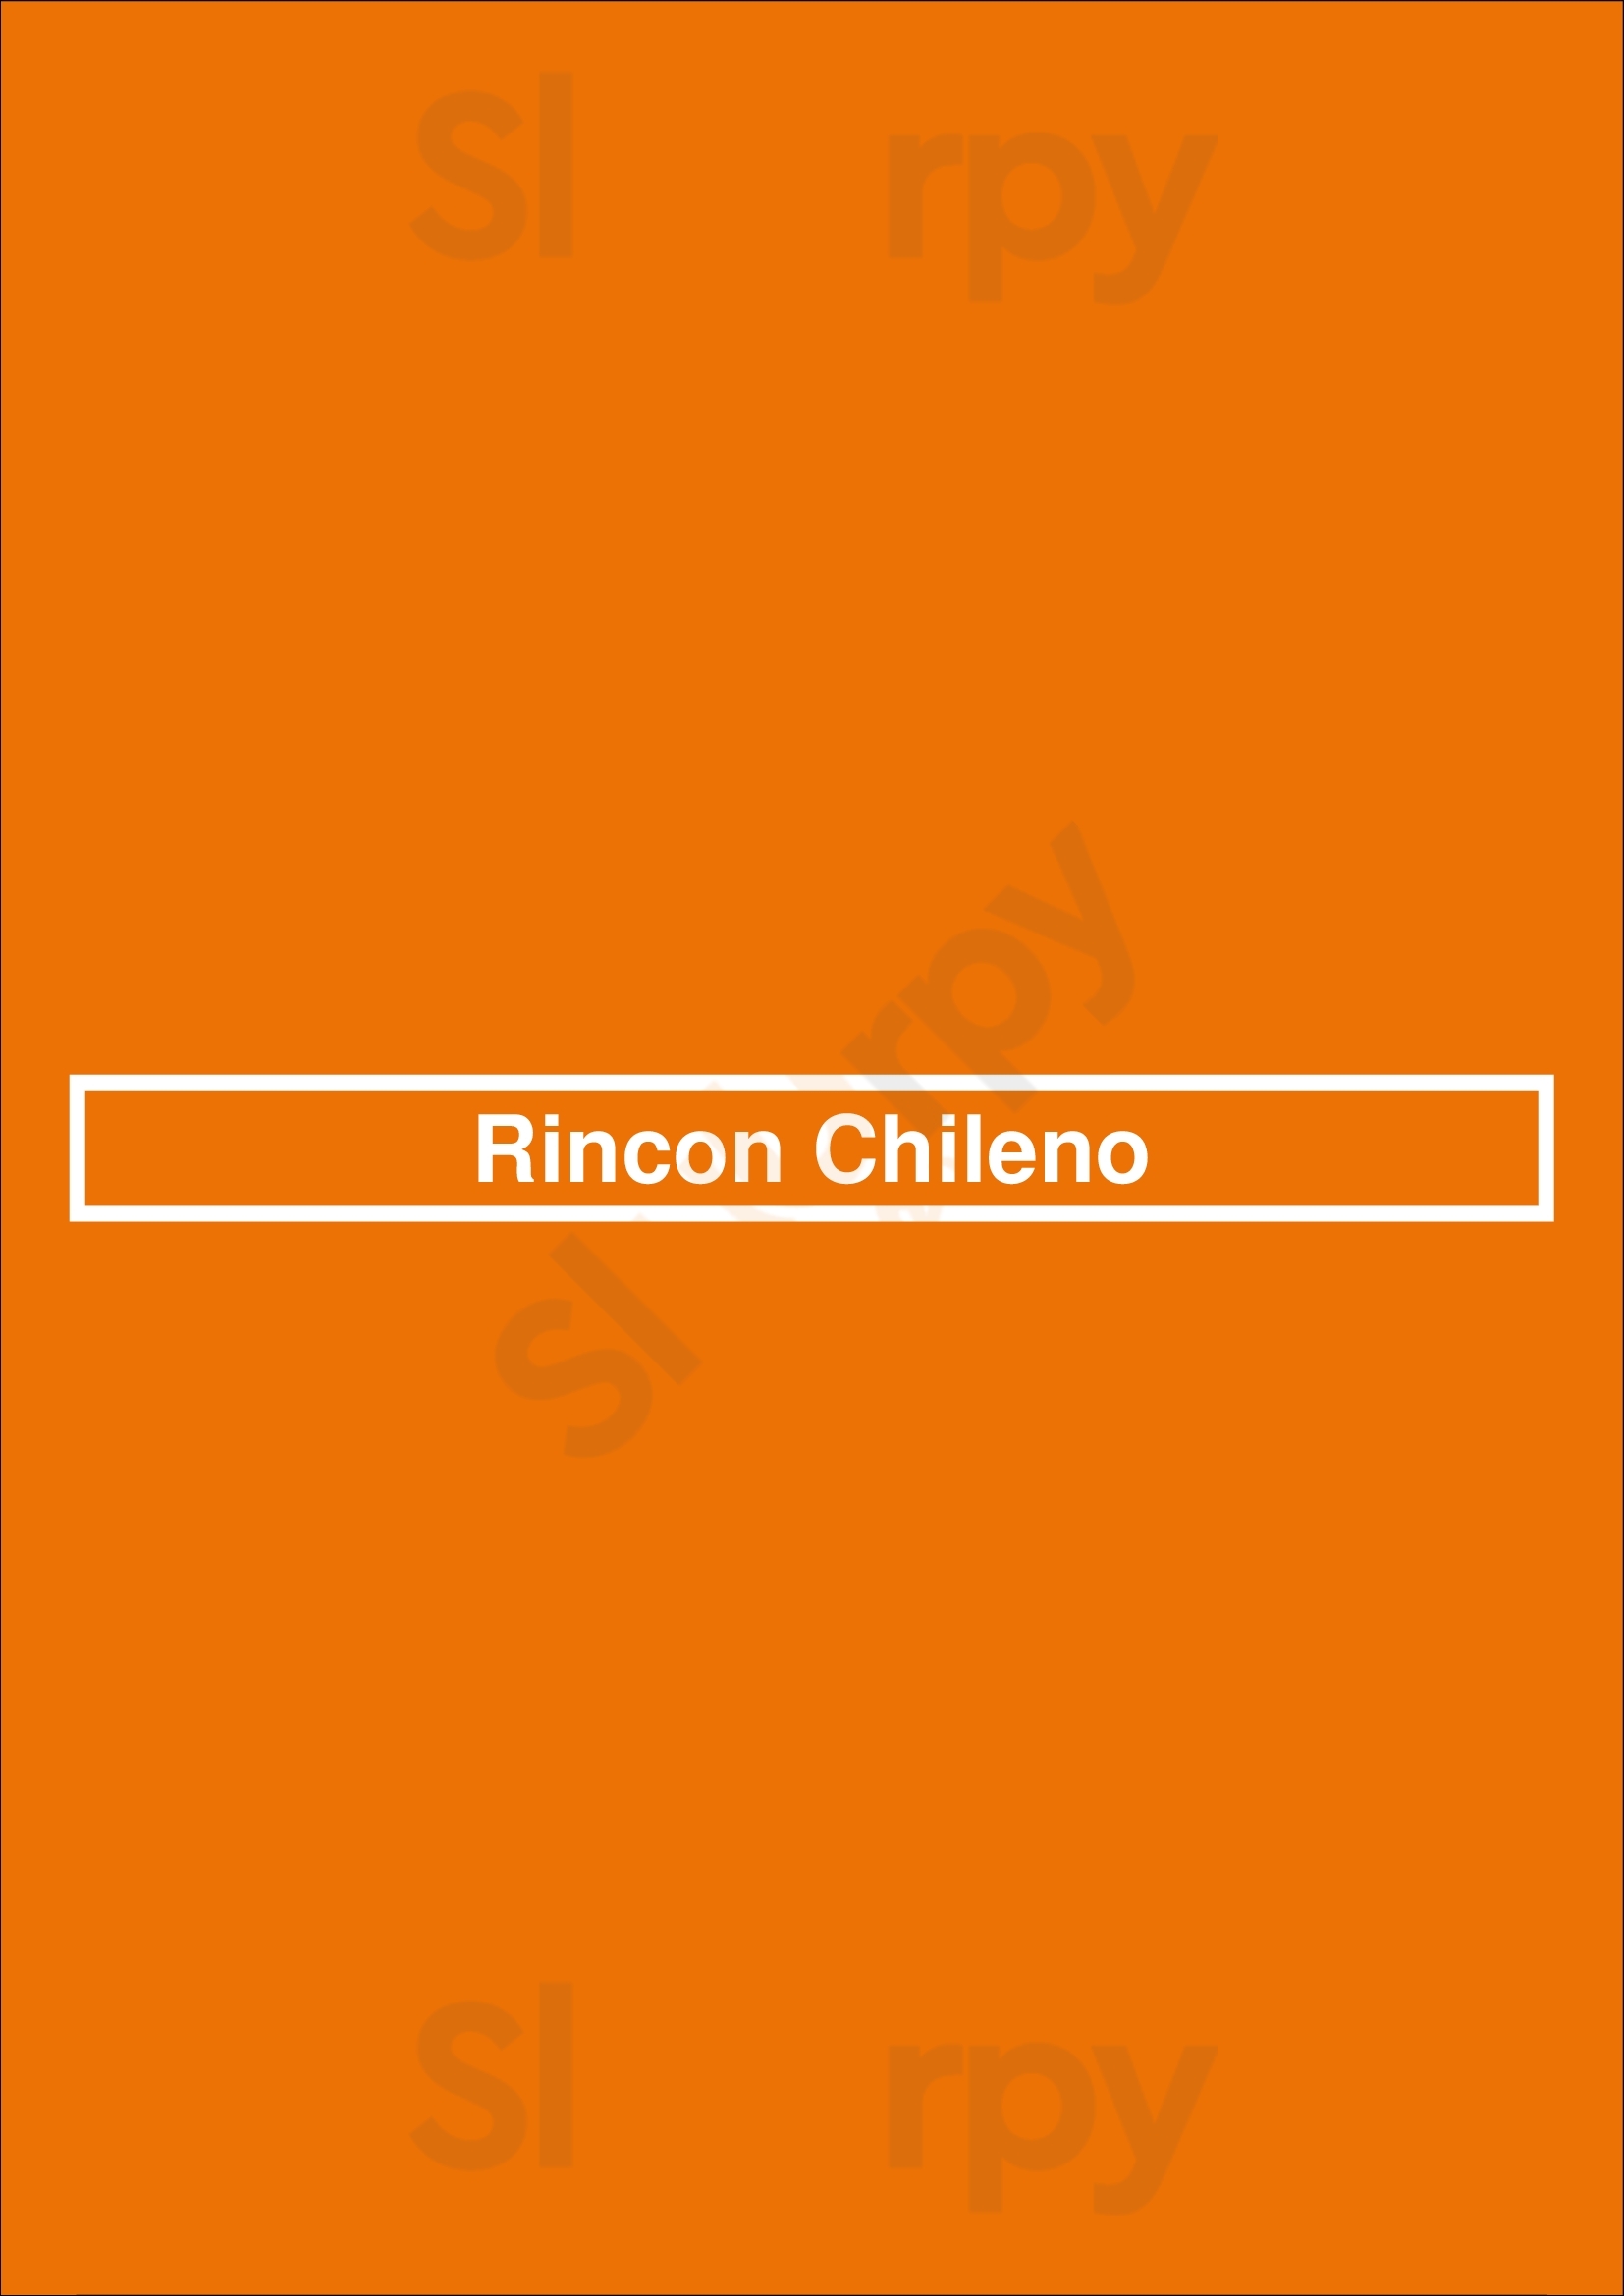 Rincon Chileno Los Angeles Menu - 1